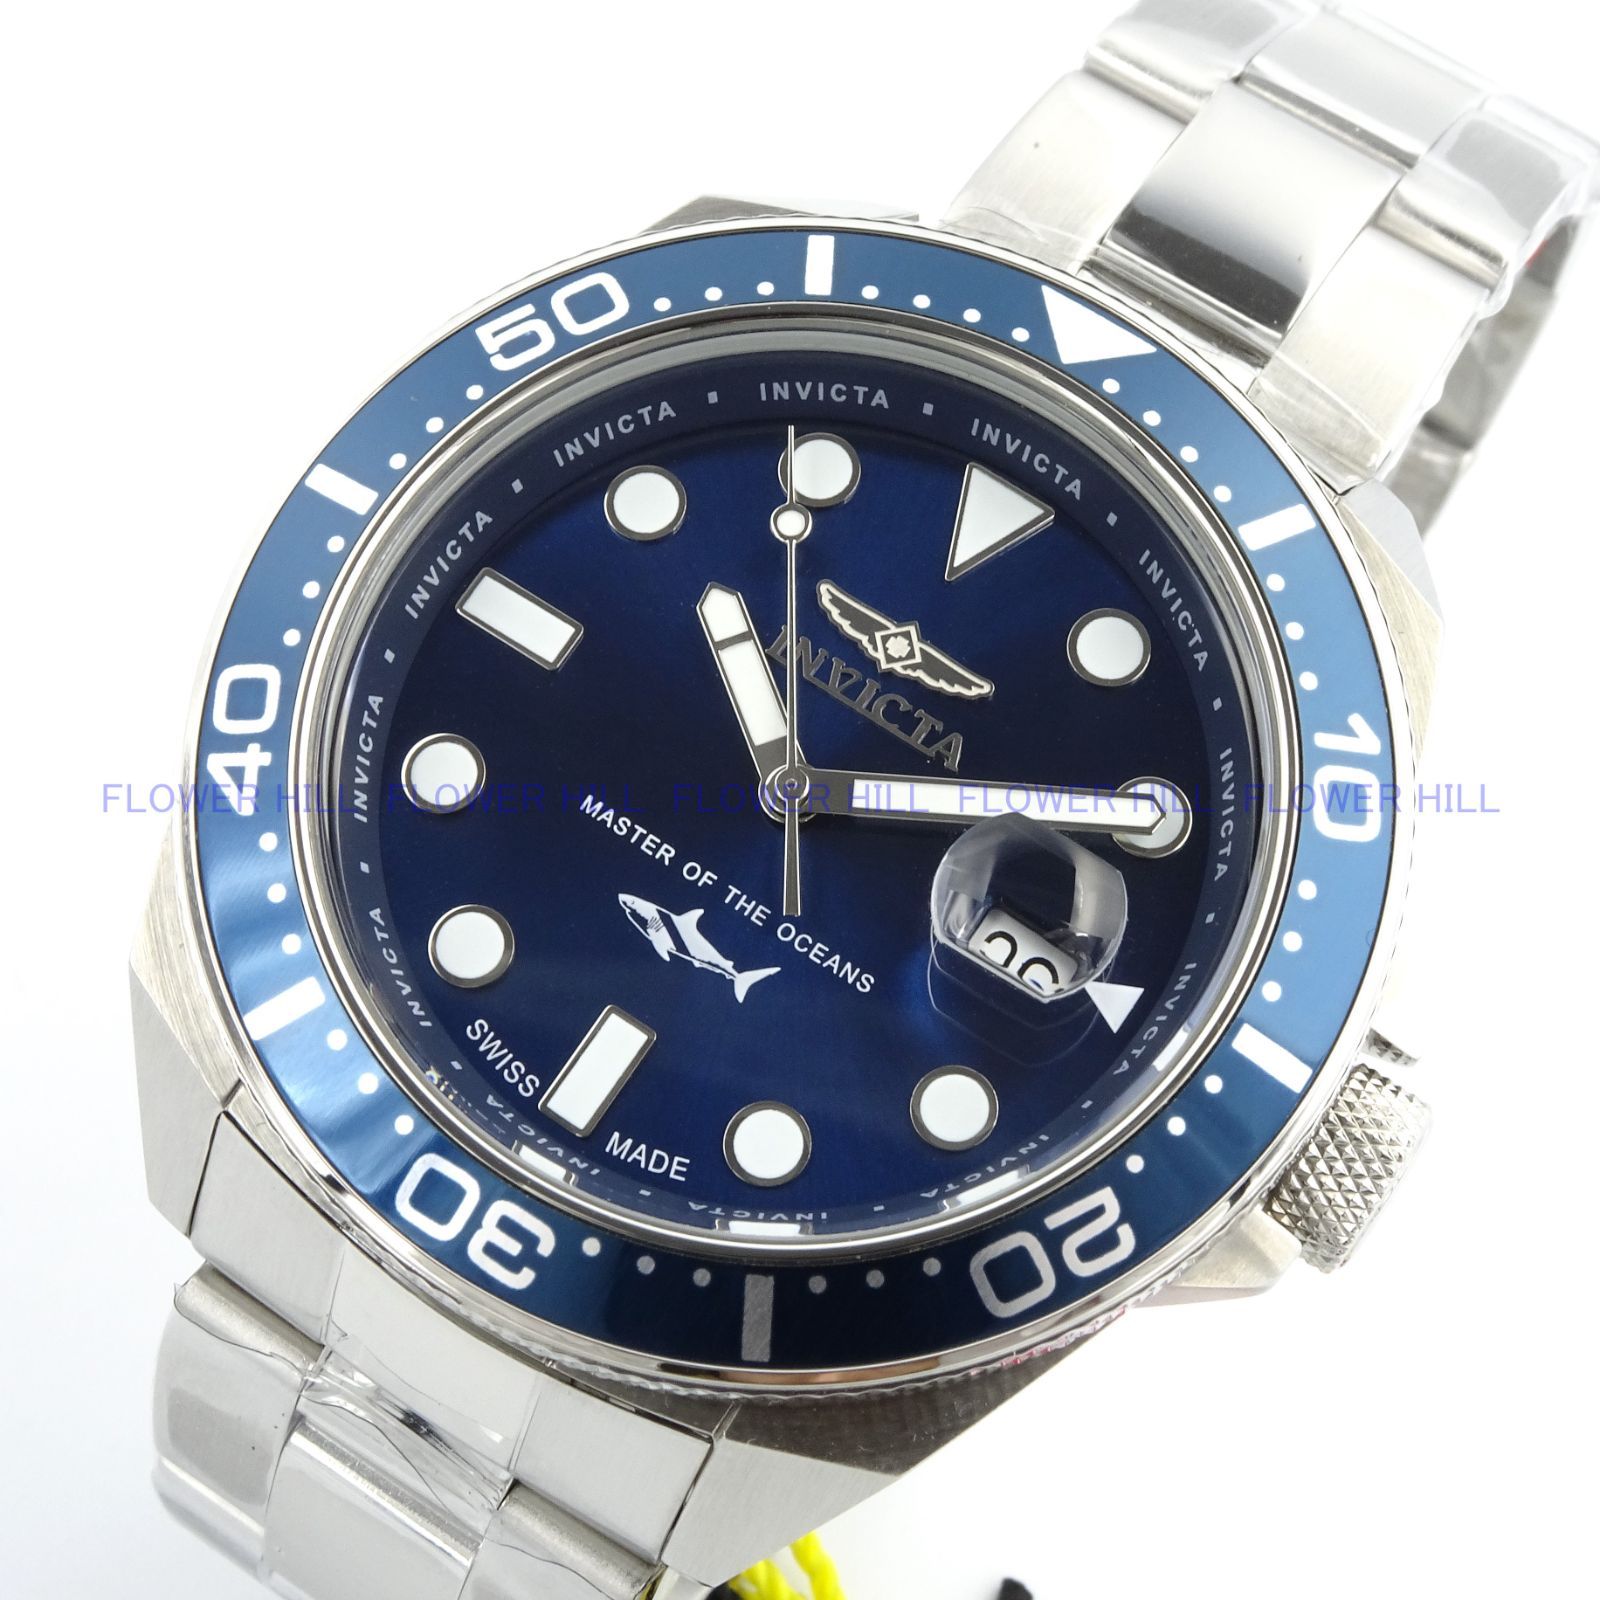 INVICTA インビクタ 腕時計 メンズ クォーツ スイスムーブメント PRO DIVER 39865 ブルー メタルバンド - メルカリ